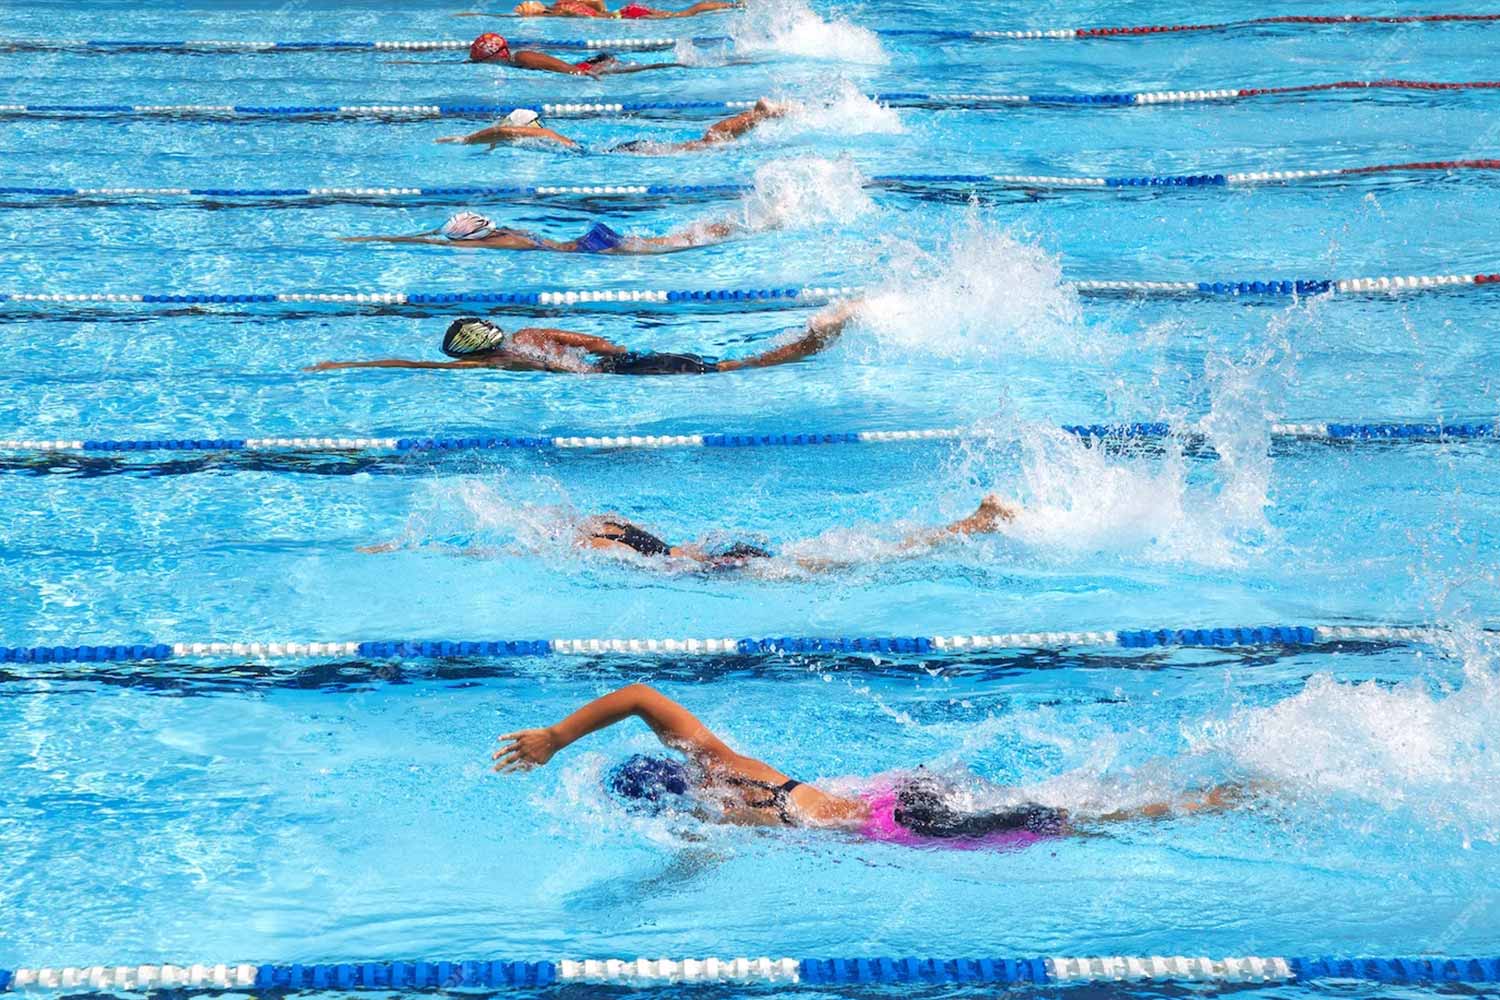 Il corso "Swimteen" è progettato per ragazzi dai 12 ai 18 anni appassionati di nuoto che vogliono perfezionare le proprie abilità in un ambiente amichevole e stimolante.